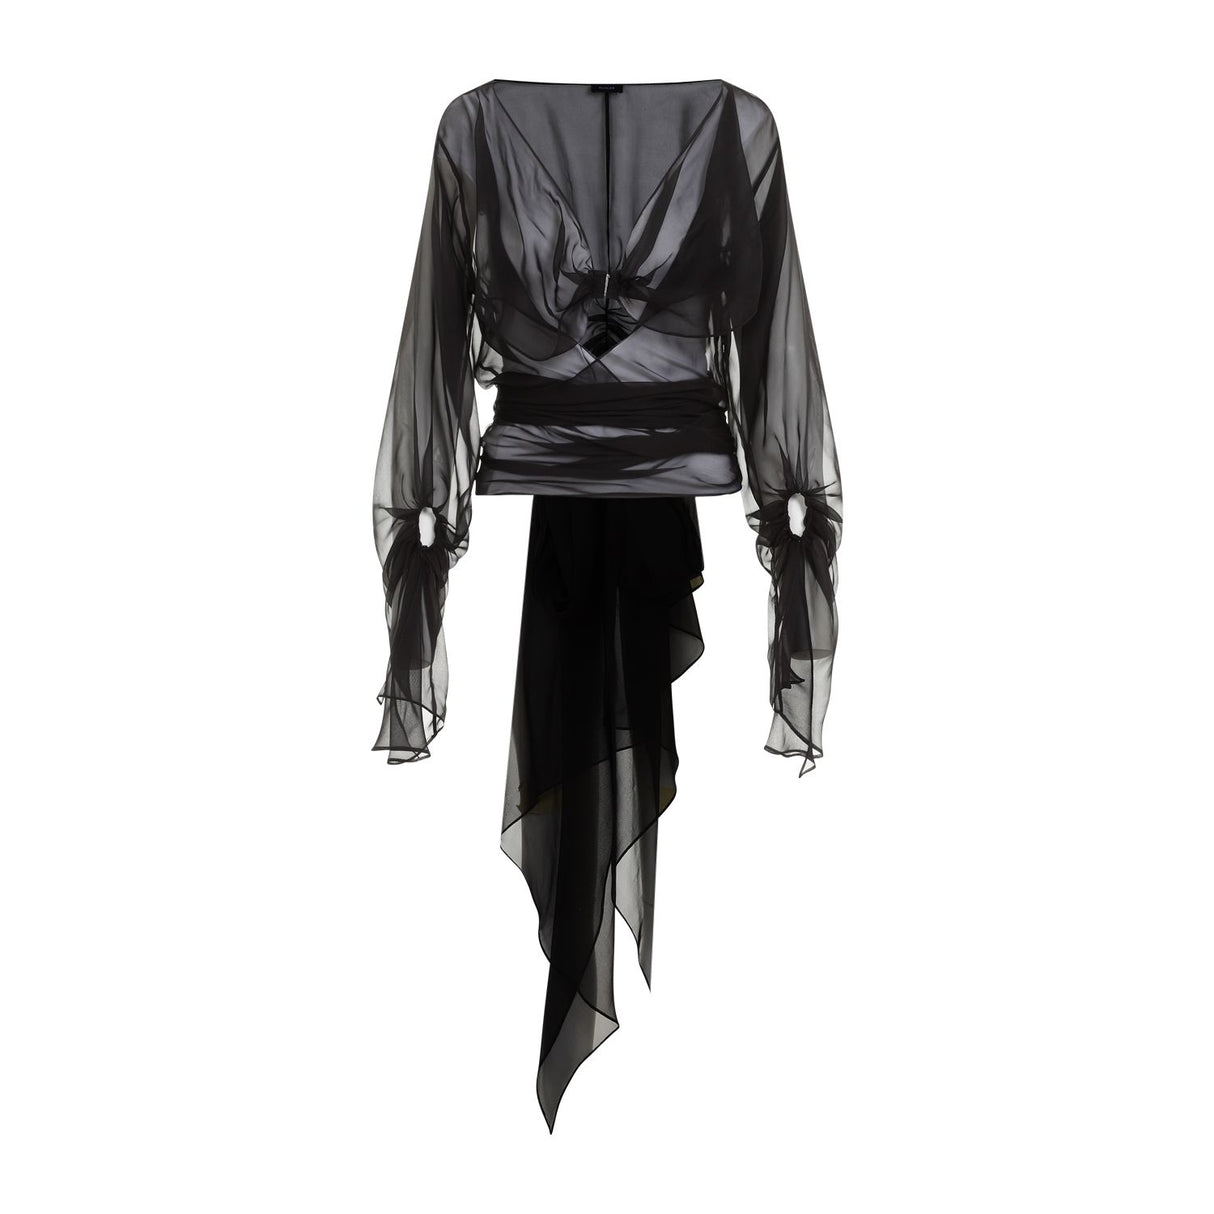 MUGLER Sleek and Stylish Black Silk Top for Women